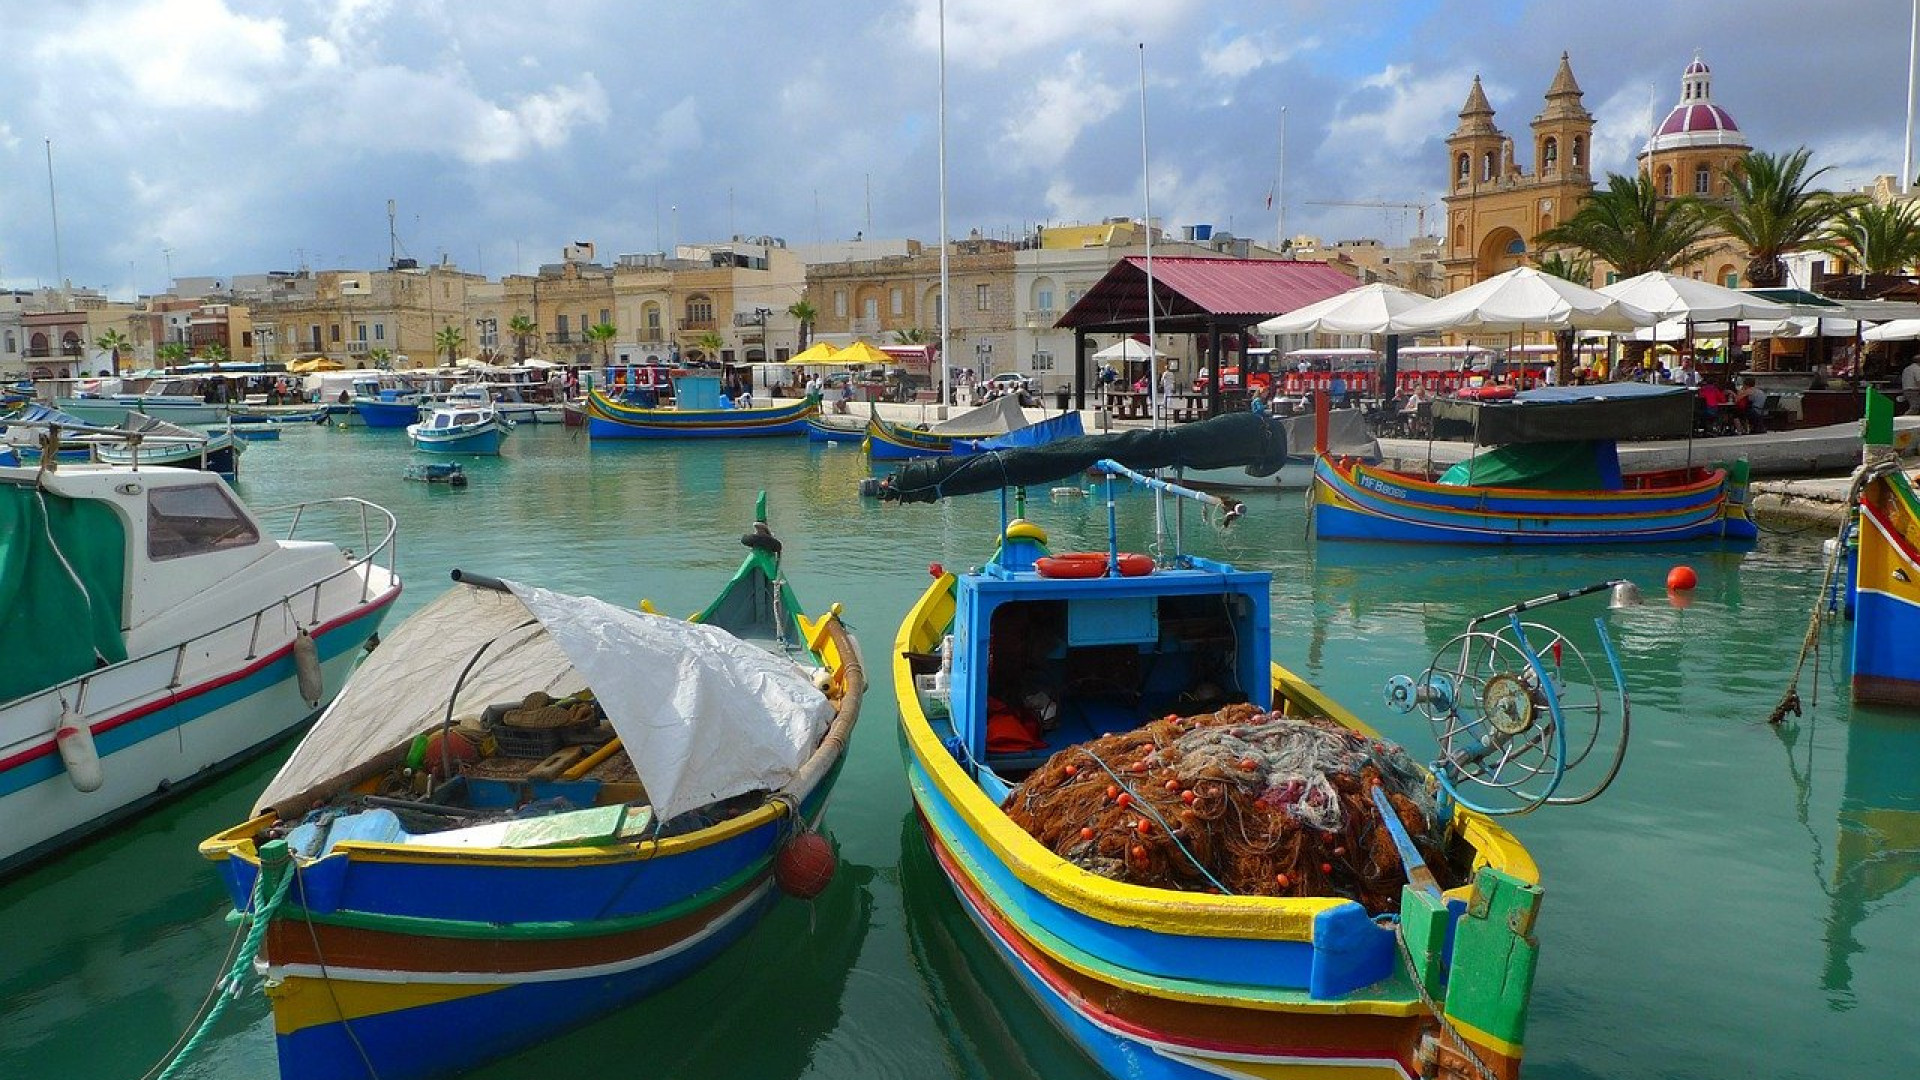 Malta, Sicilia og Sardinia: tre juveler i Middelhavet å oppdage